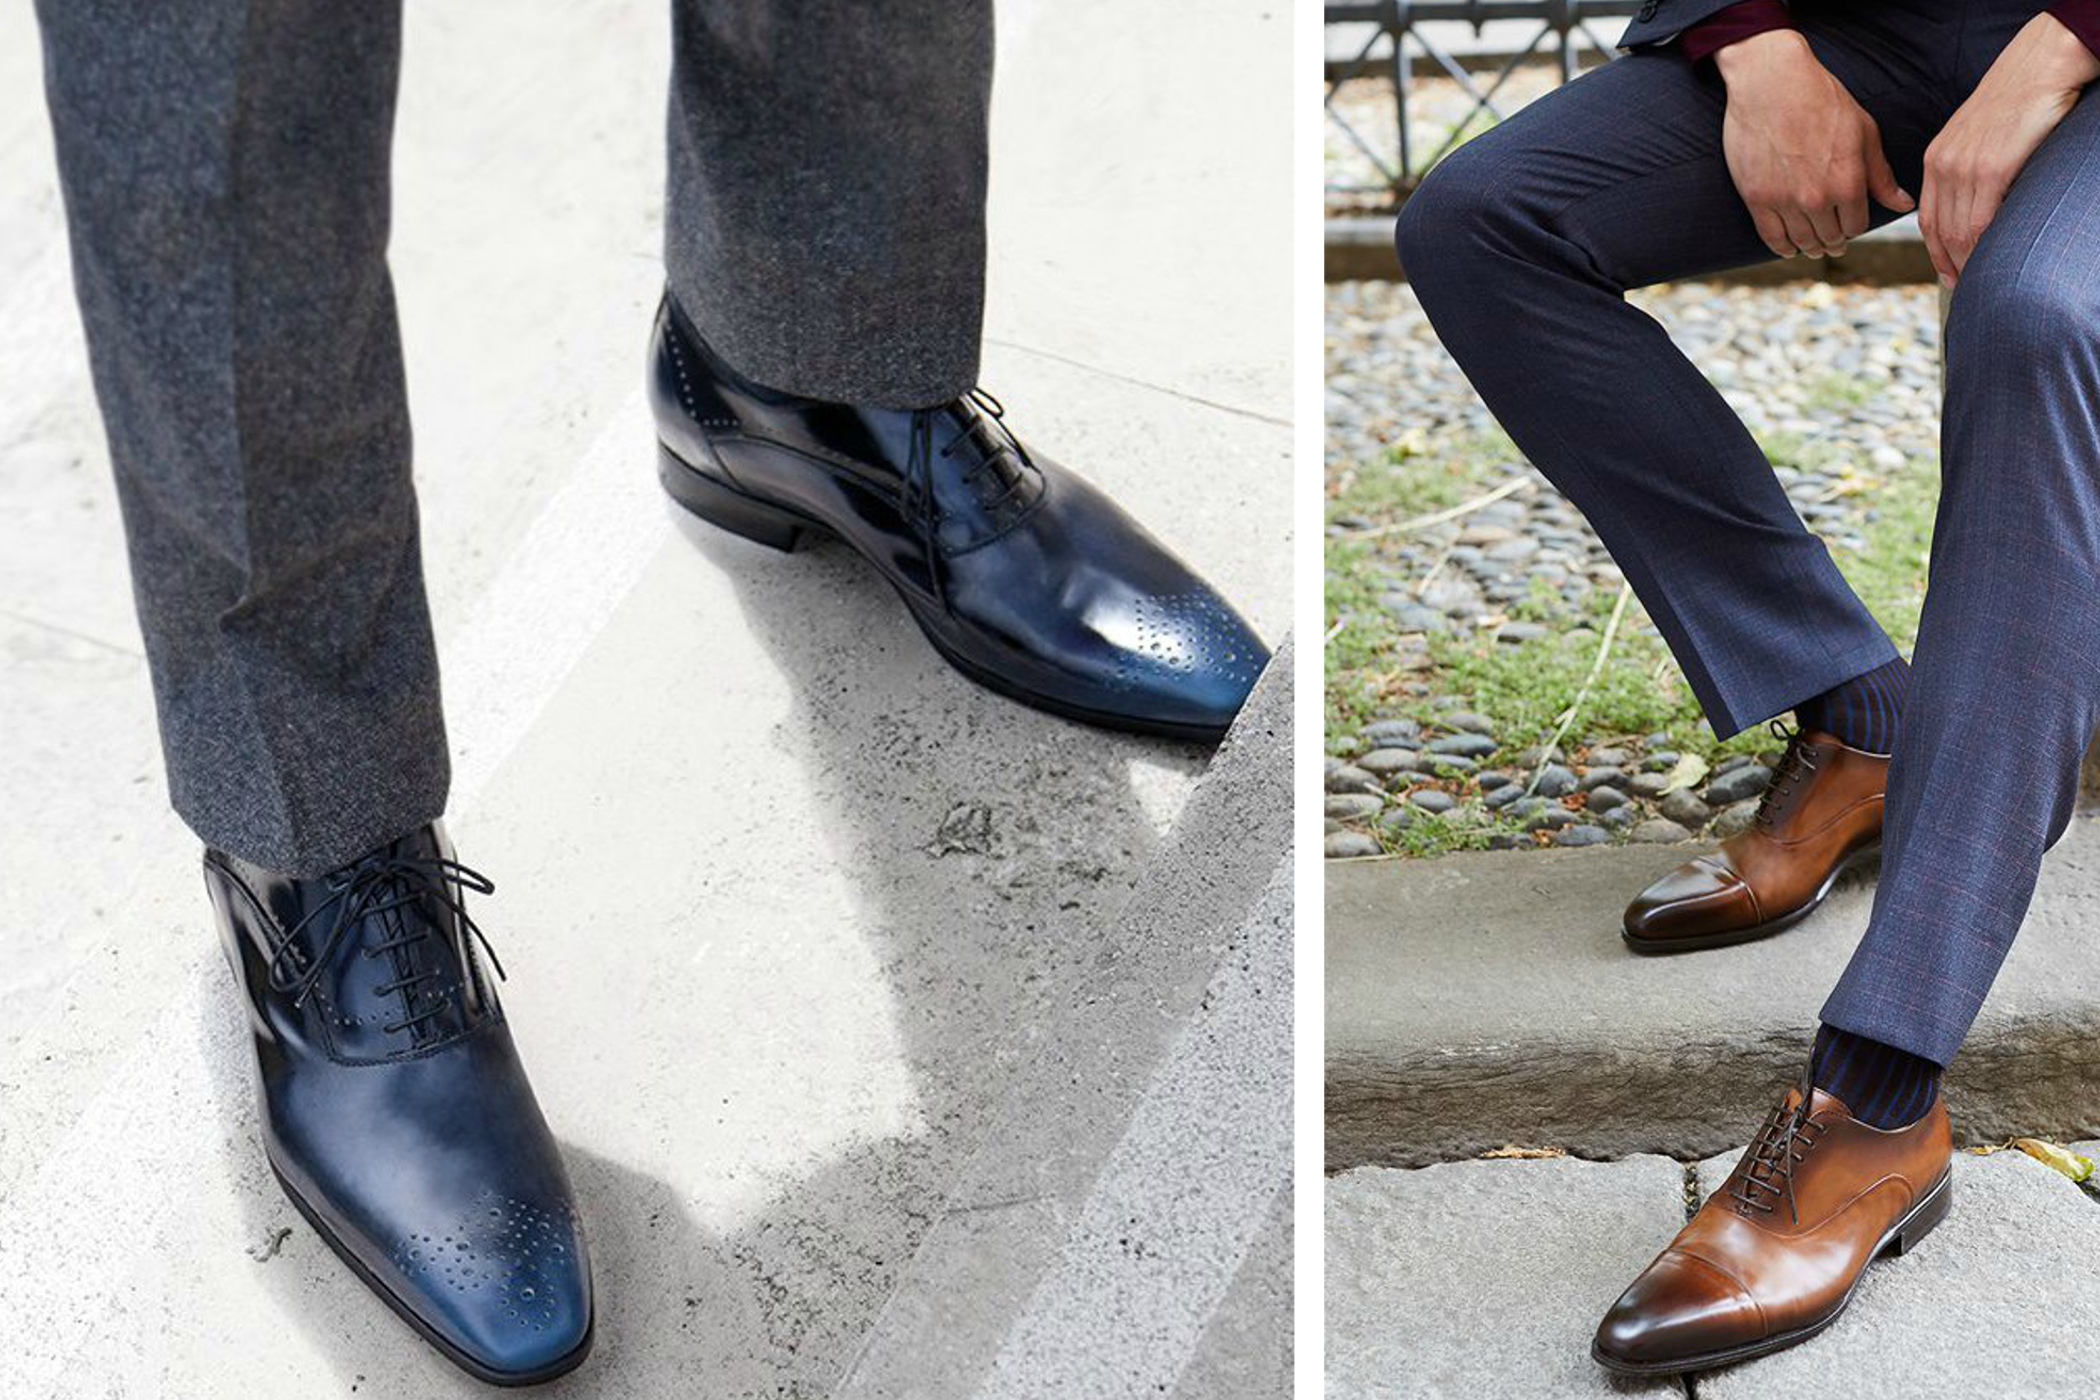 procent Kiezelsteen Verrijking Mannen: deze schoenen draag je onder je kostuum | Gazet van Antwerpen Mobile